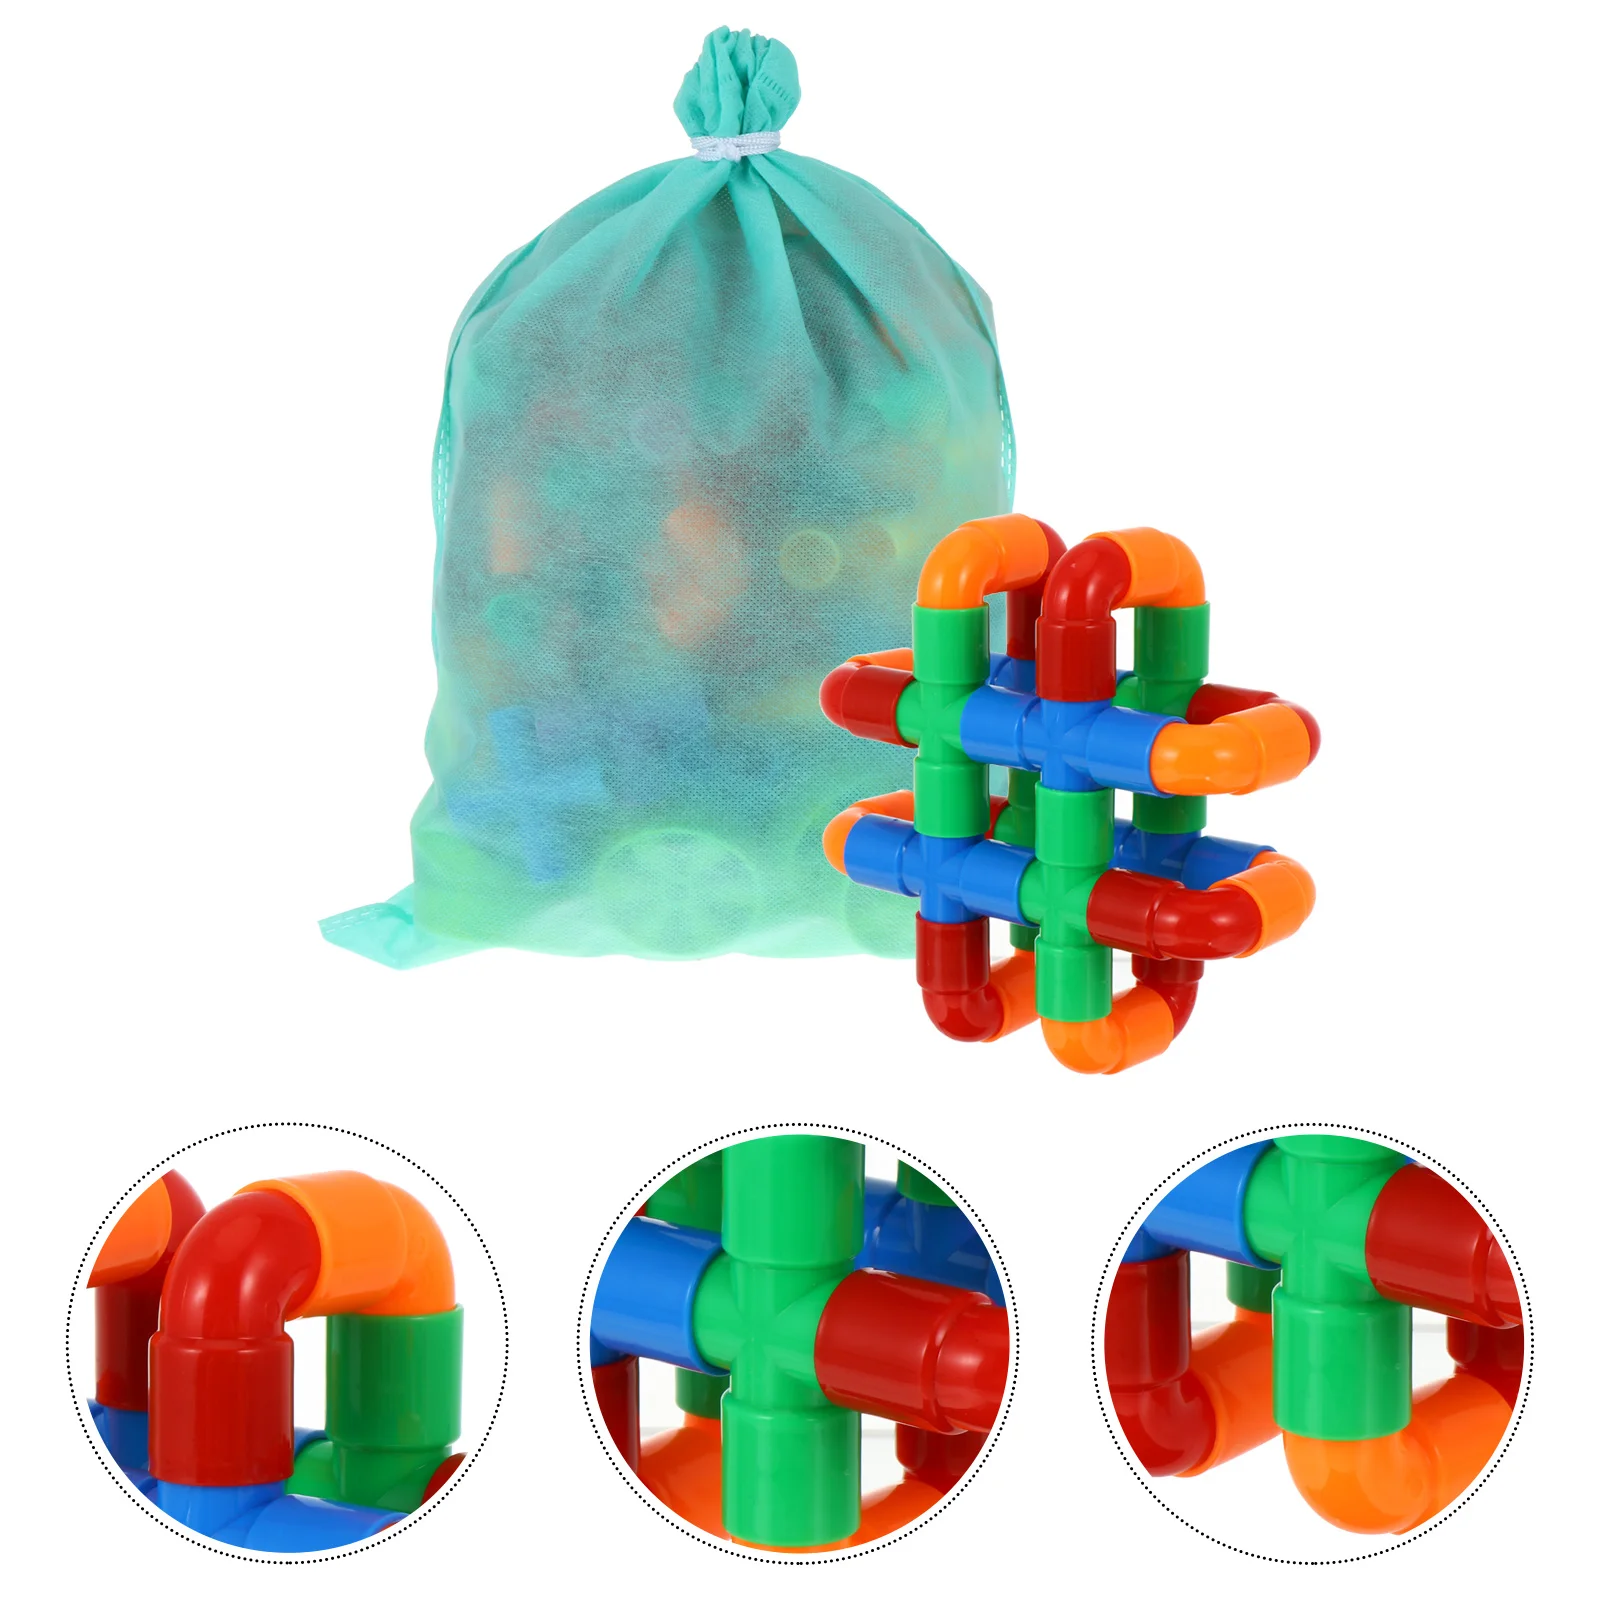 

Детские игрушки-конструкторы, пазл с водопроводной трубой, Детский развивающий пластиковый игрушечный набор для раннего обучения